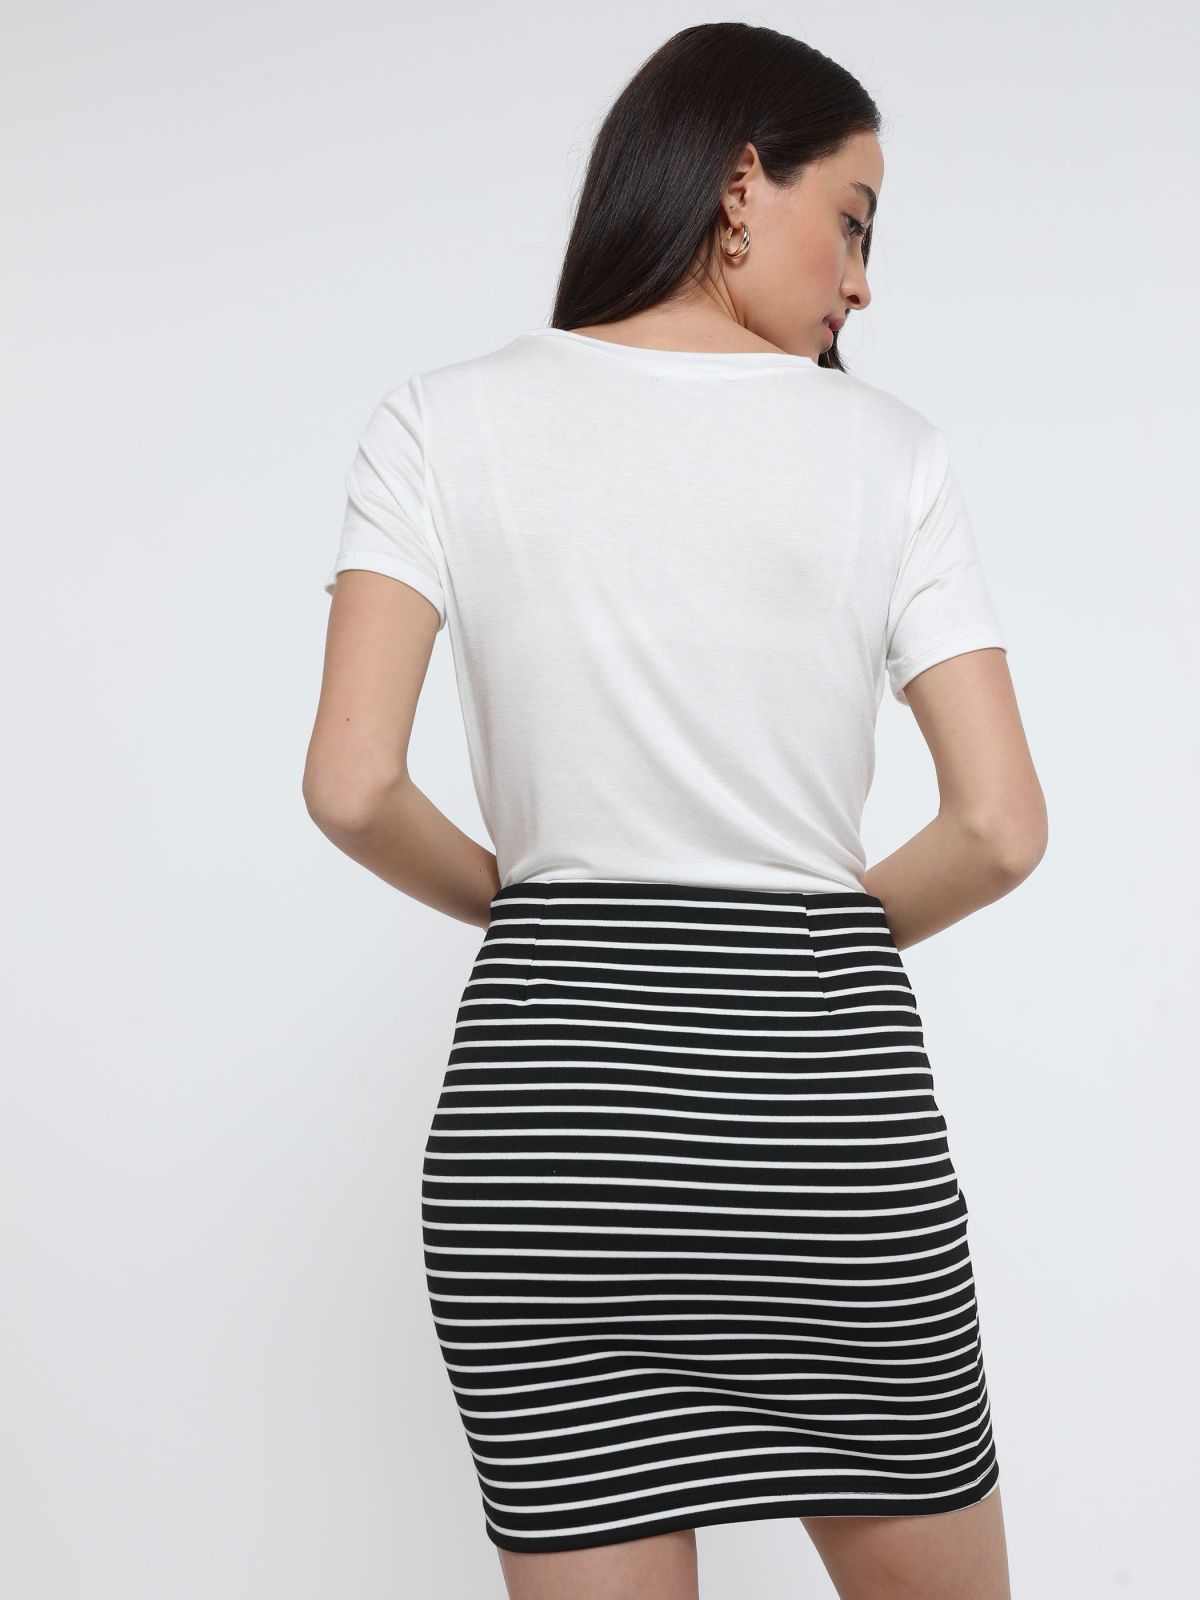  חצאית מיני בהדפס פסים של TERMINAL X